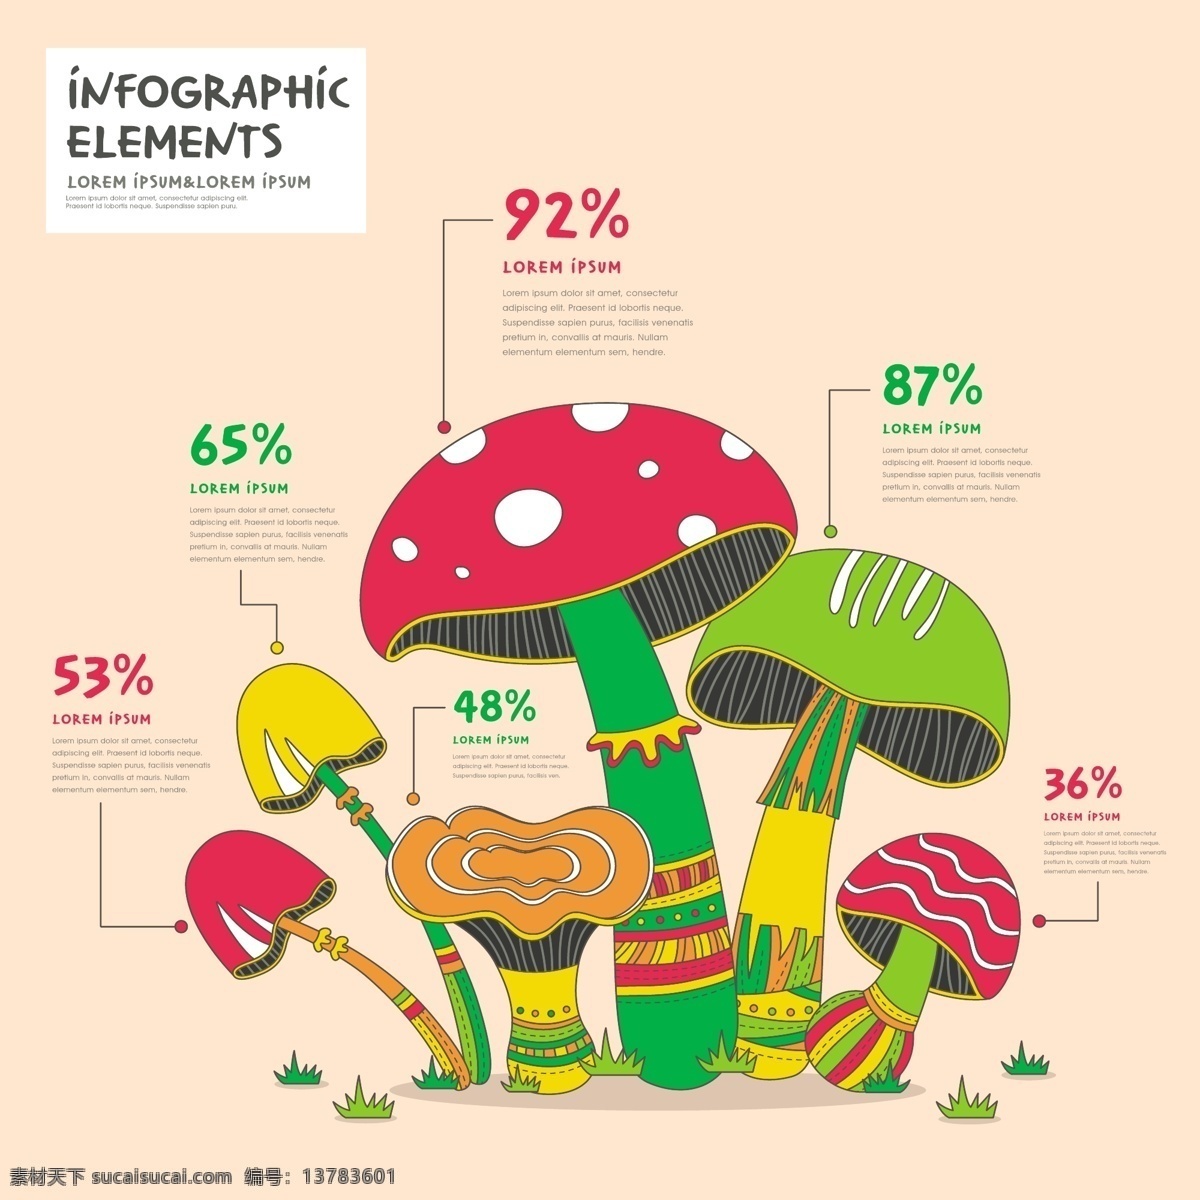 蘑菇 宣传 广告 背景 矢量 模板下载 图表 香菇 蘑菇设计 矢量蘑菇 卡通蘑菇 餐饮美食 生活百科 矢量素材 白色